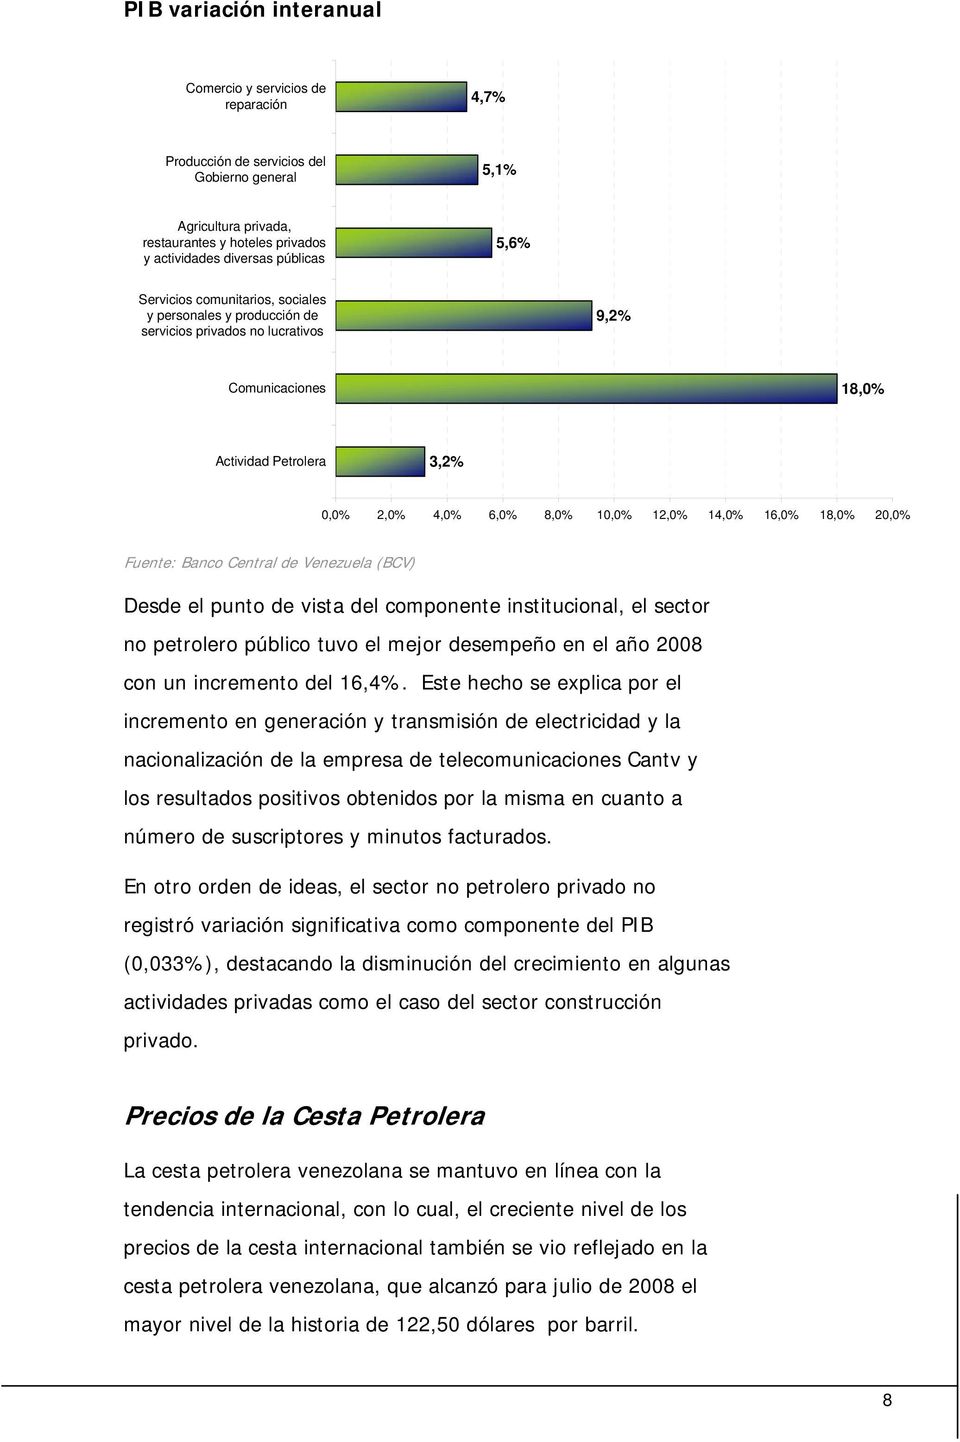 18,0% 20,0% Fuente: Banco Central de Venezuela (BCV) Desde el punto de vista del componente institucional, el sector no petrolero público tuvo el mejor desempeño en el año 2008 con un incremento del